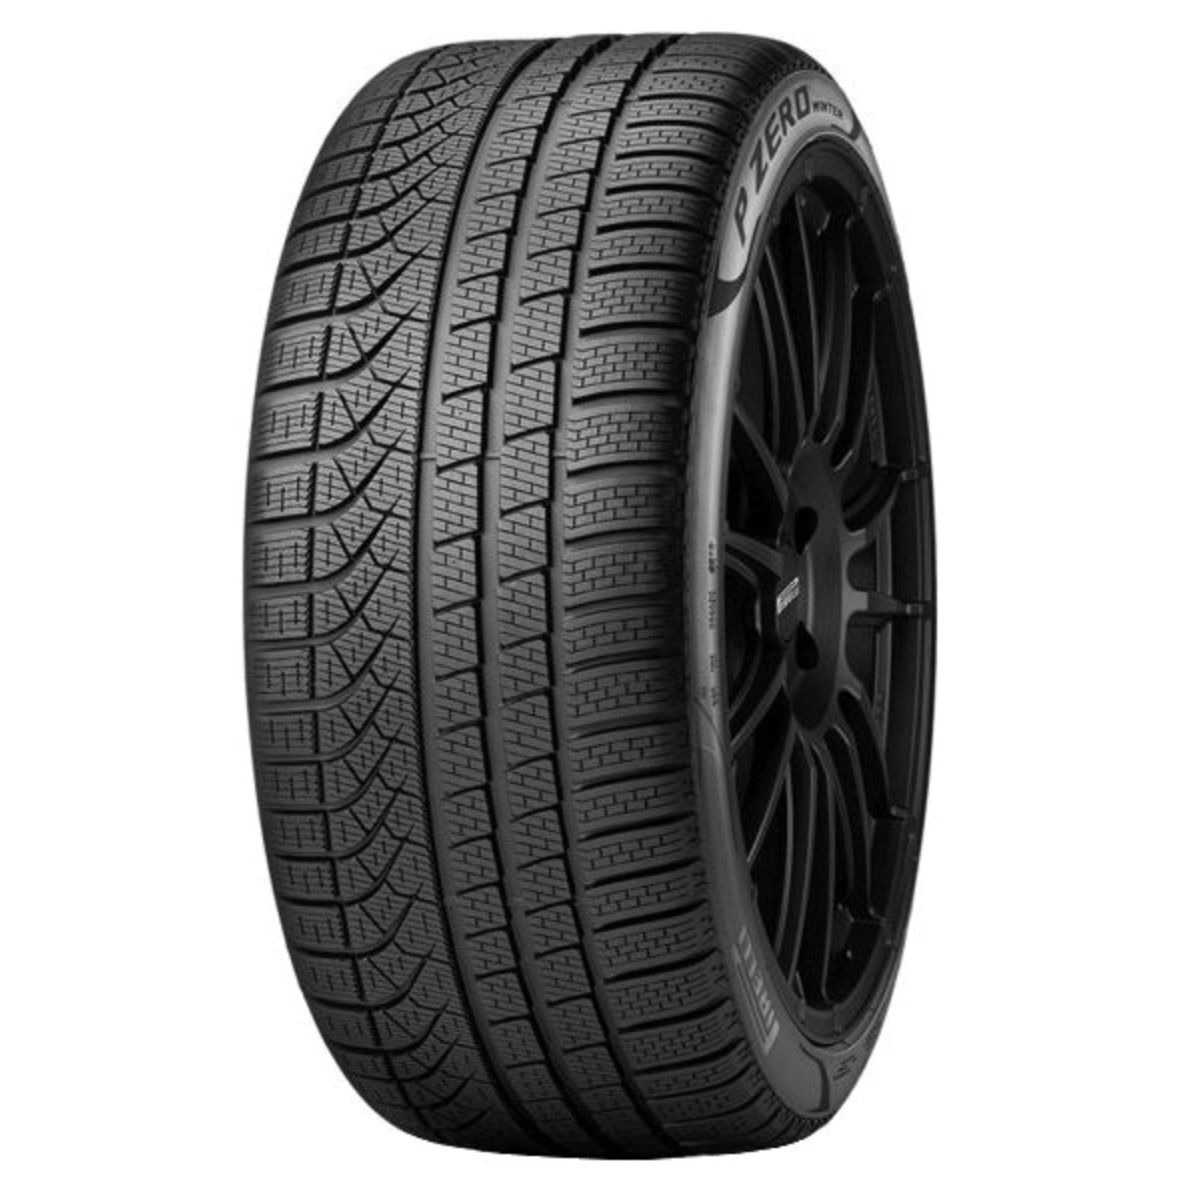 Neumáticos de invierno PIRELLI P Zero Winter 245/40R19 XL 98V